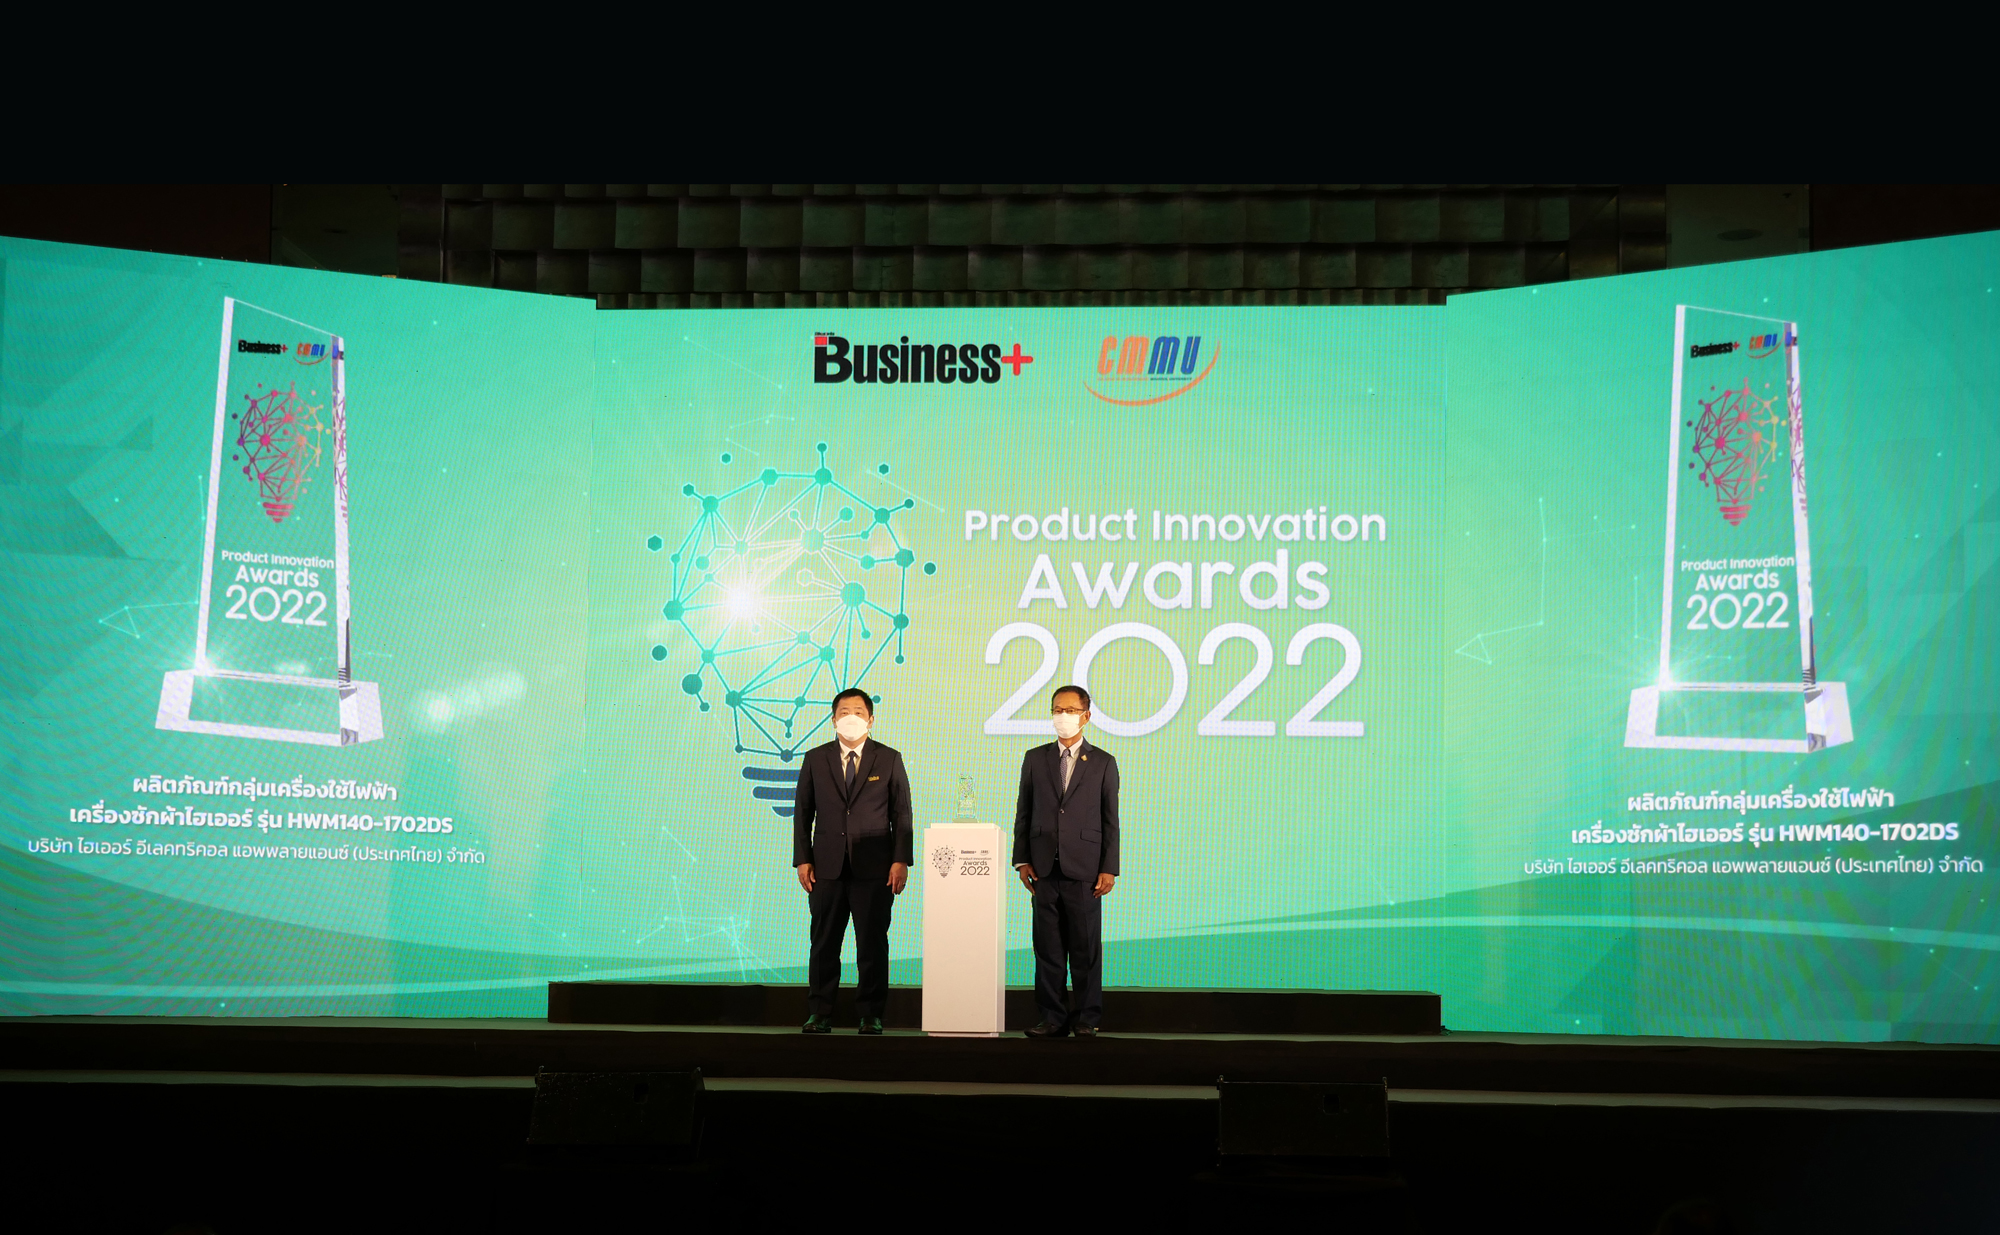 ไฮเออร์ คว้า 3 รางวัลใหญ่จากเวที Business+ Product Innovation Awards 2022 ตอกย้ำศักยภาพแบรนด์แห่งนวัตกรรมที่ตรงใจผู้บริโภค สำนักพิมพ์แม่บ้าน